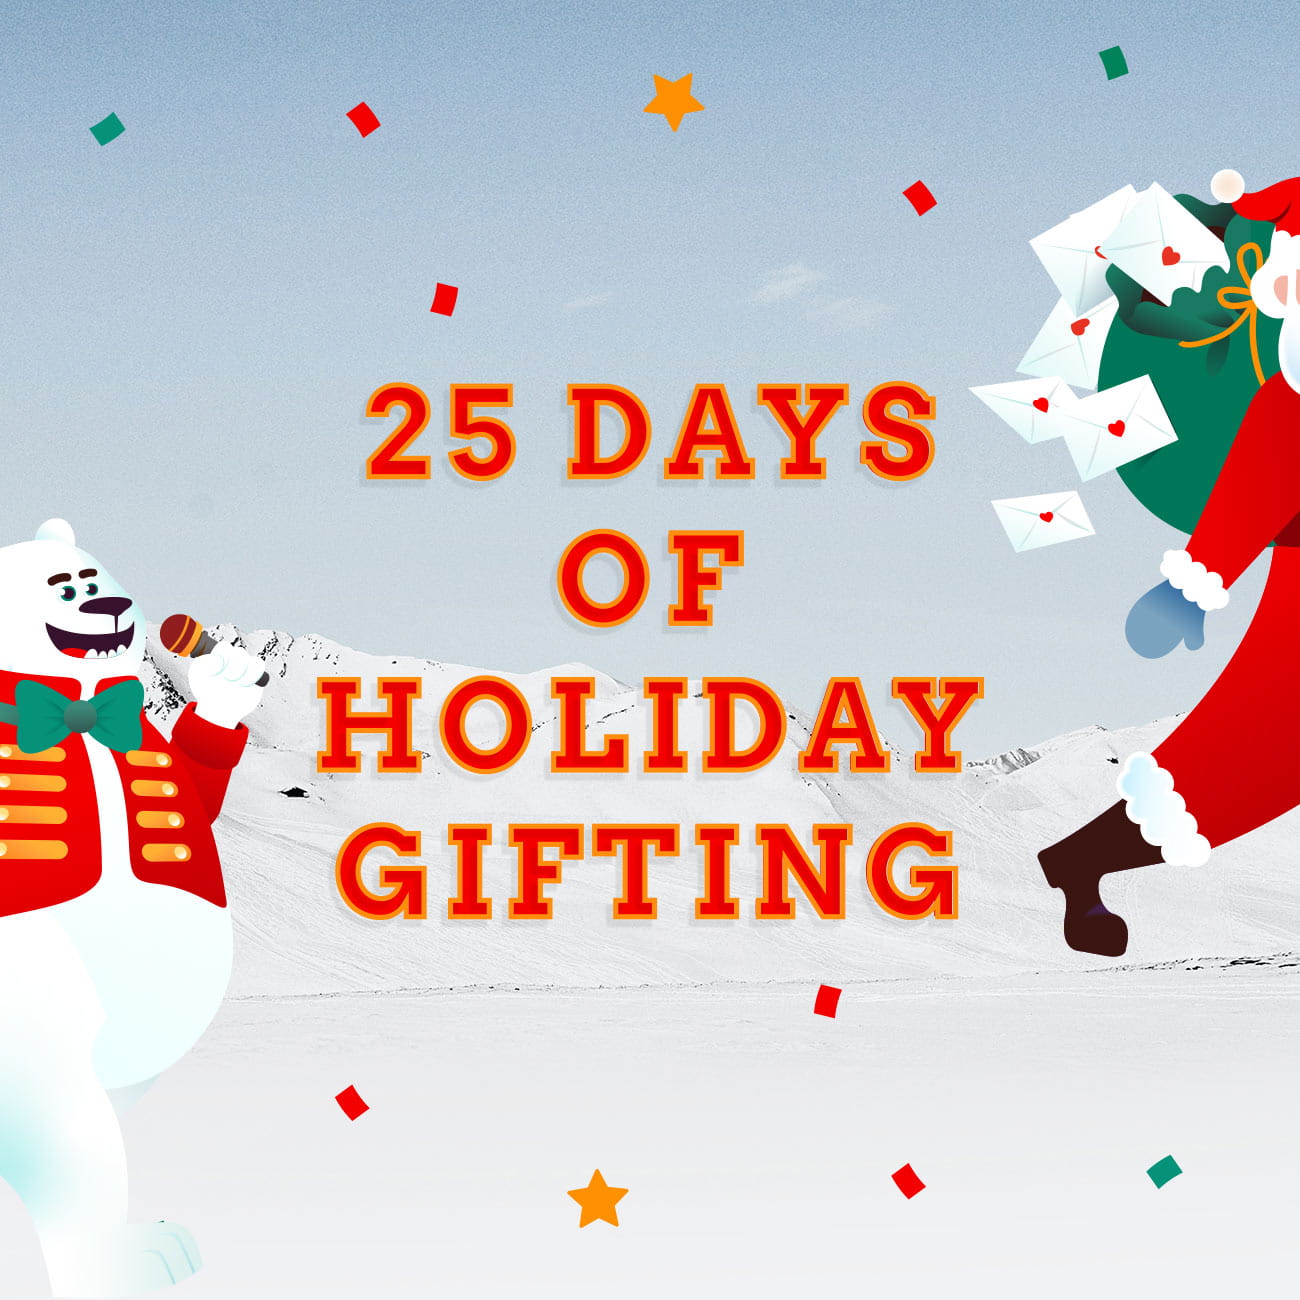 25 Days of Holiday Gifting at Pacific Place Hong Kong